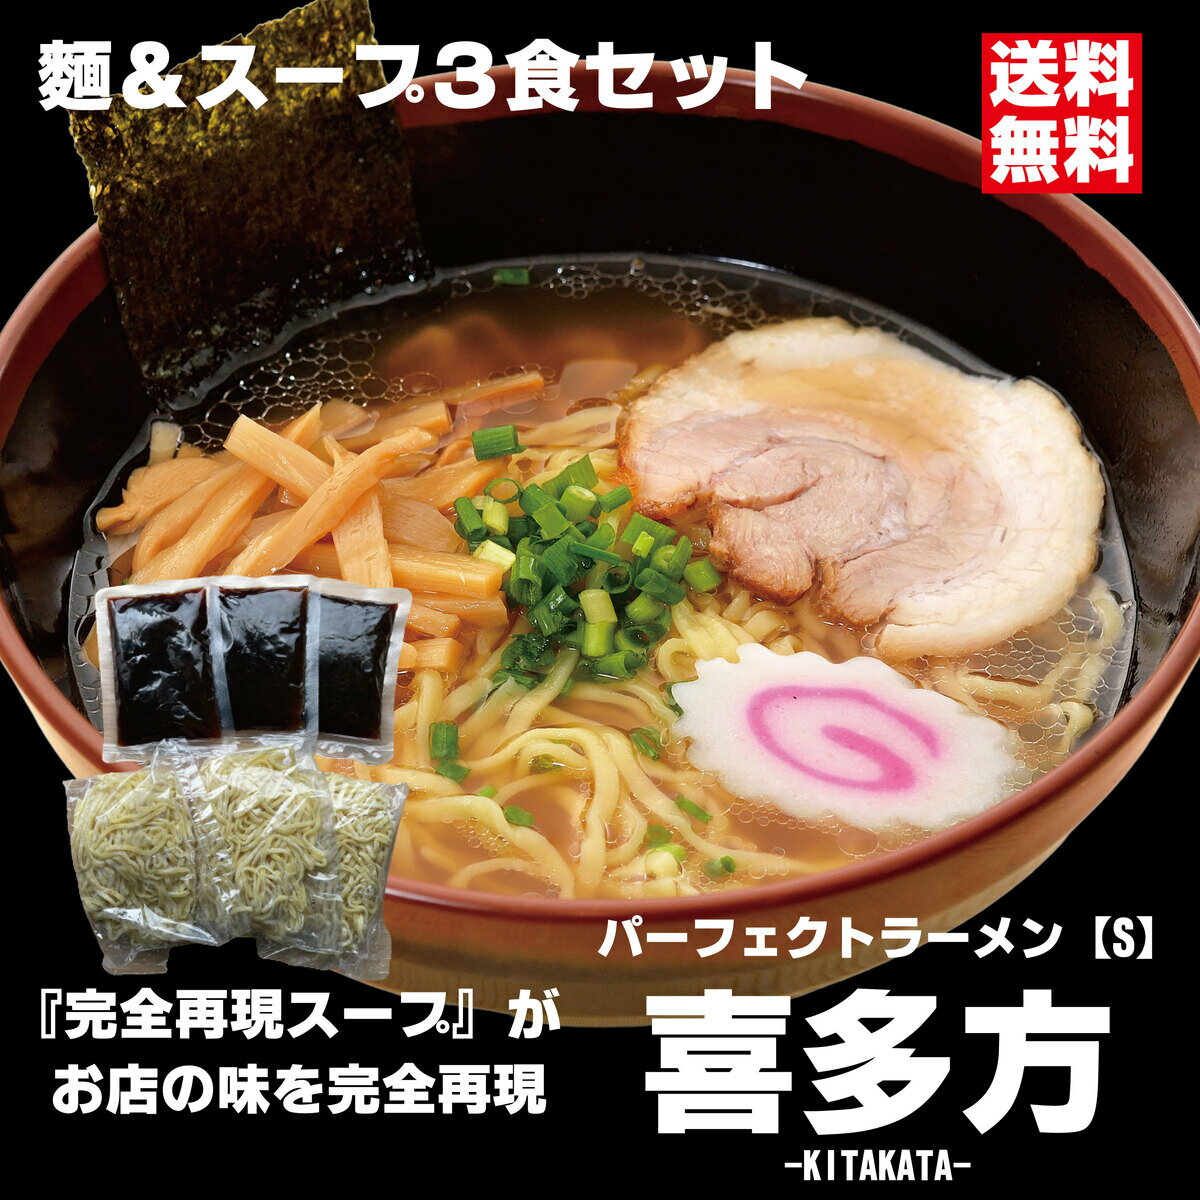 パーフェクトラーメン喜多方【S】3食セット 麺とスープ 喜多